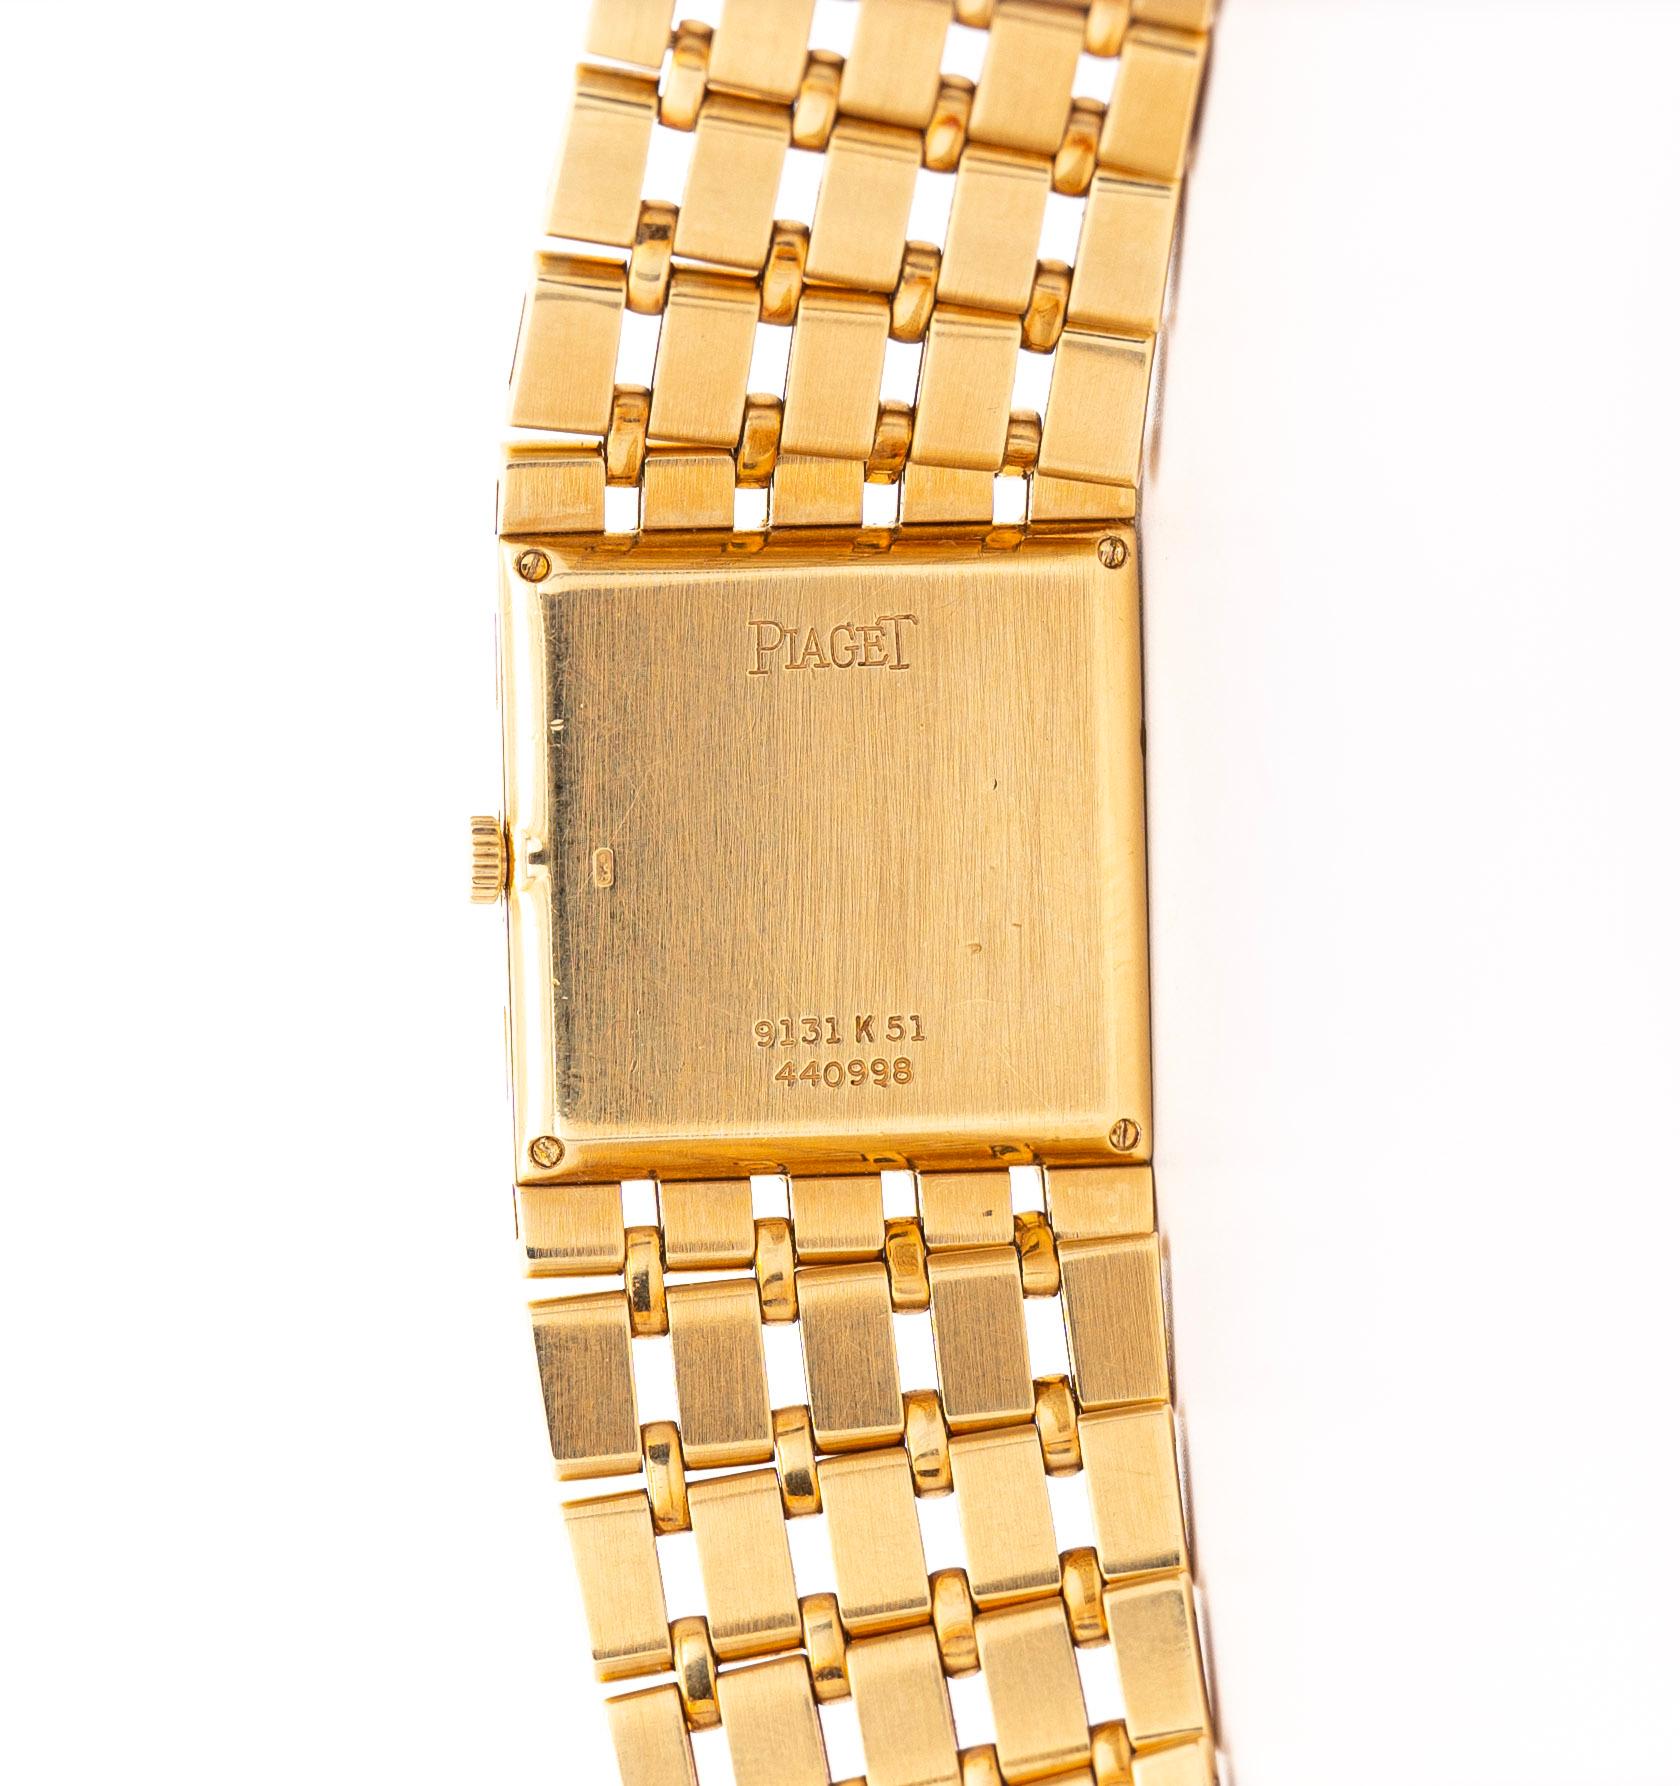 Piaget Polo 91321-K51 montre automatique vintage en or 18 carats 2